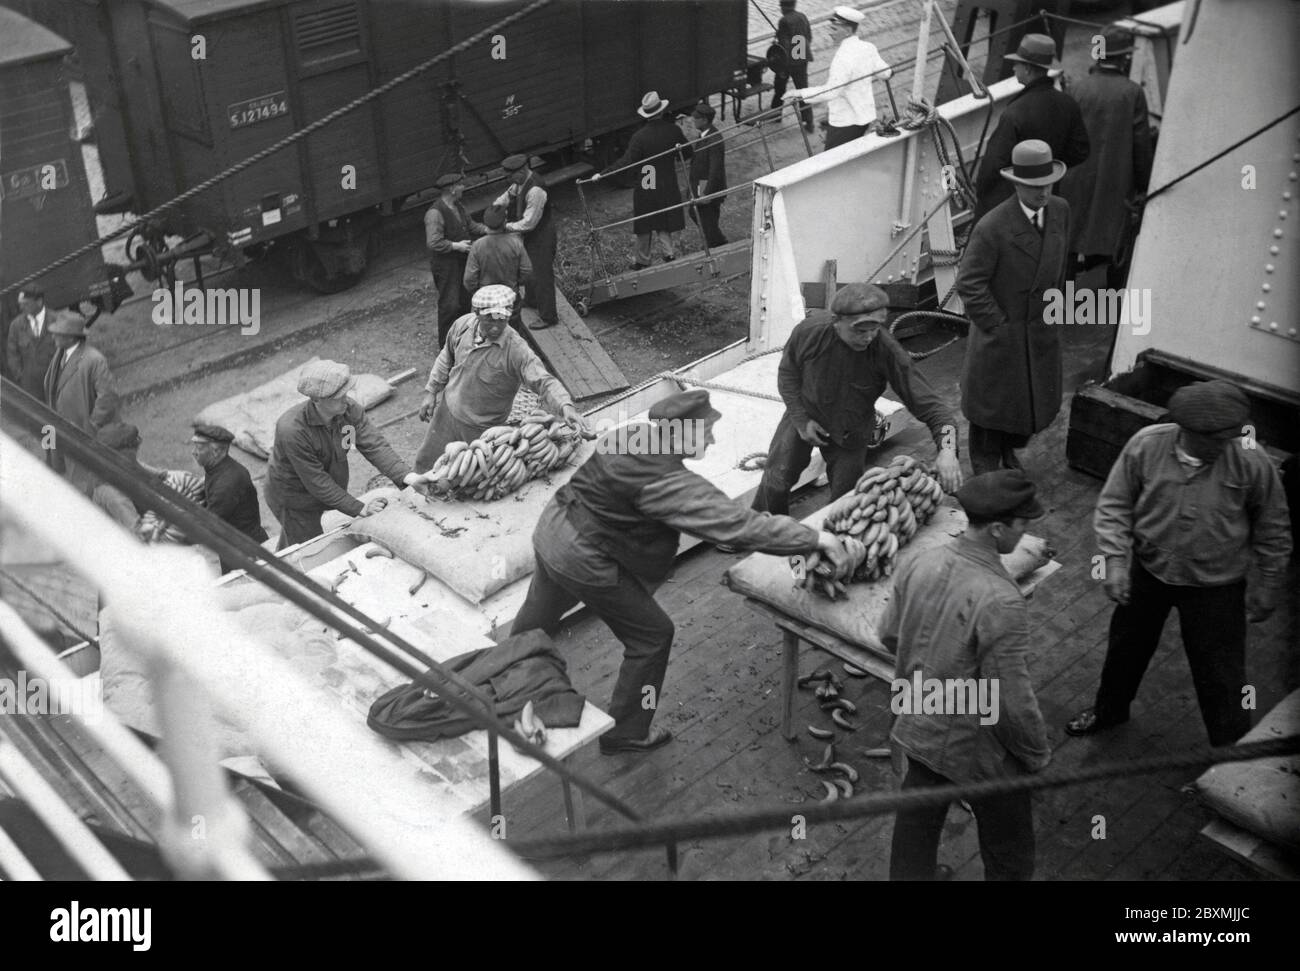 Les travailleurs aux quais. Des hommes du port de Göteborg déchargent les bananes d'un navire qui vient d'arriver des Antilles. Swedish Banan kompaniet a été la première entreprise à importer des bananes en suède. La première fois que cela s'est produit, c'était le 27 1909 février. Photographie prise dans les années 1930. Banque D'Images